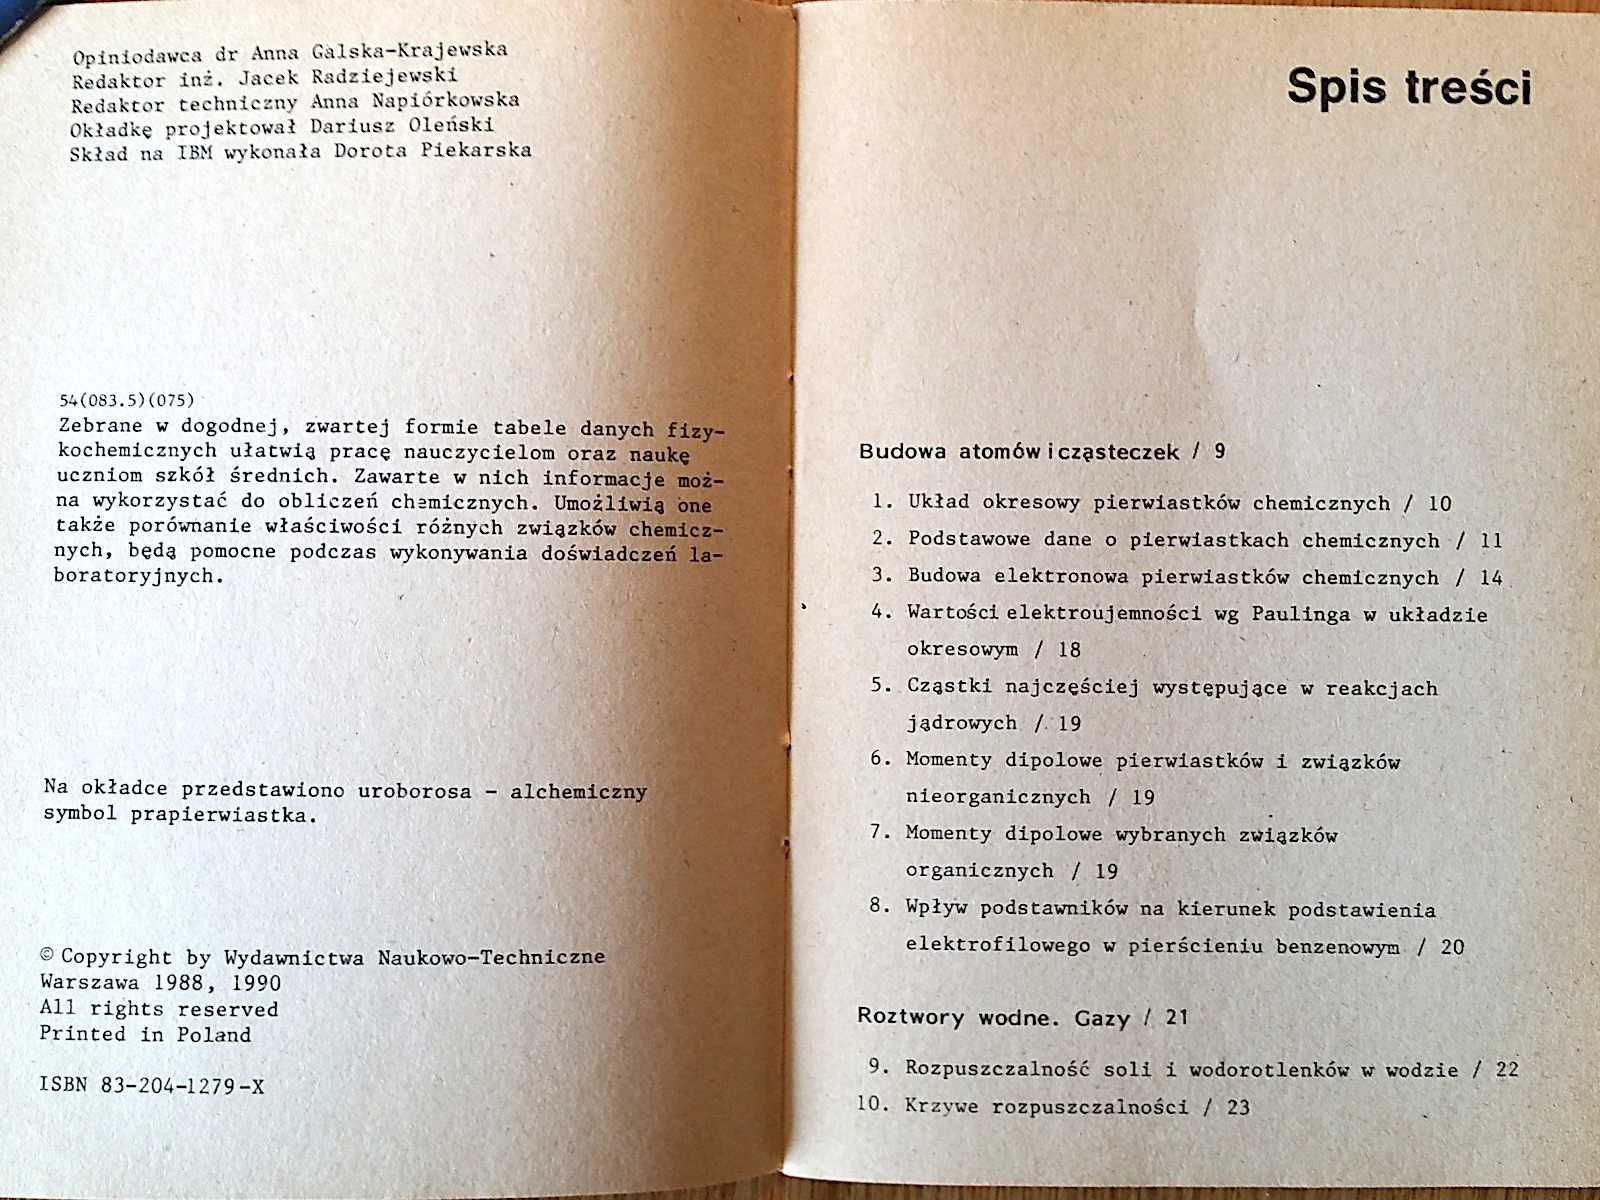 CHEMIA: "Tabele chemiczne dla uczniów" (tablice chemiczne) WNT 1990